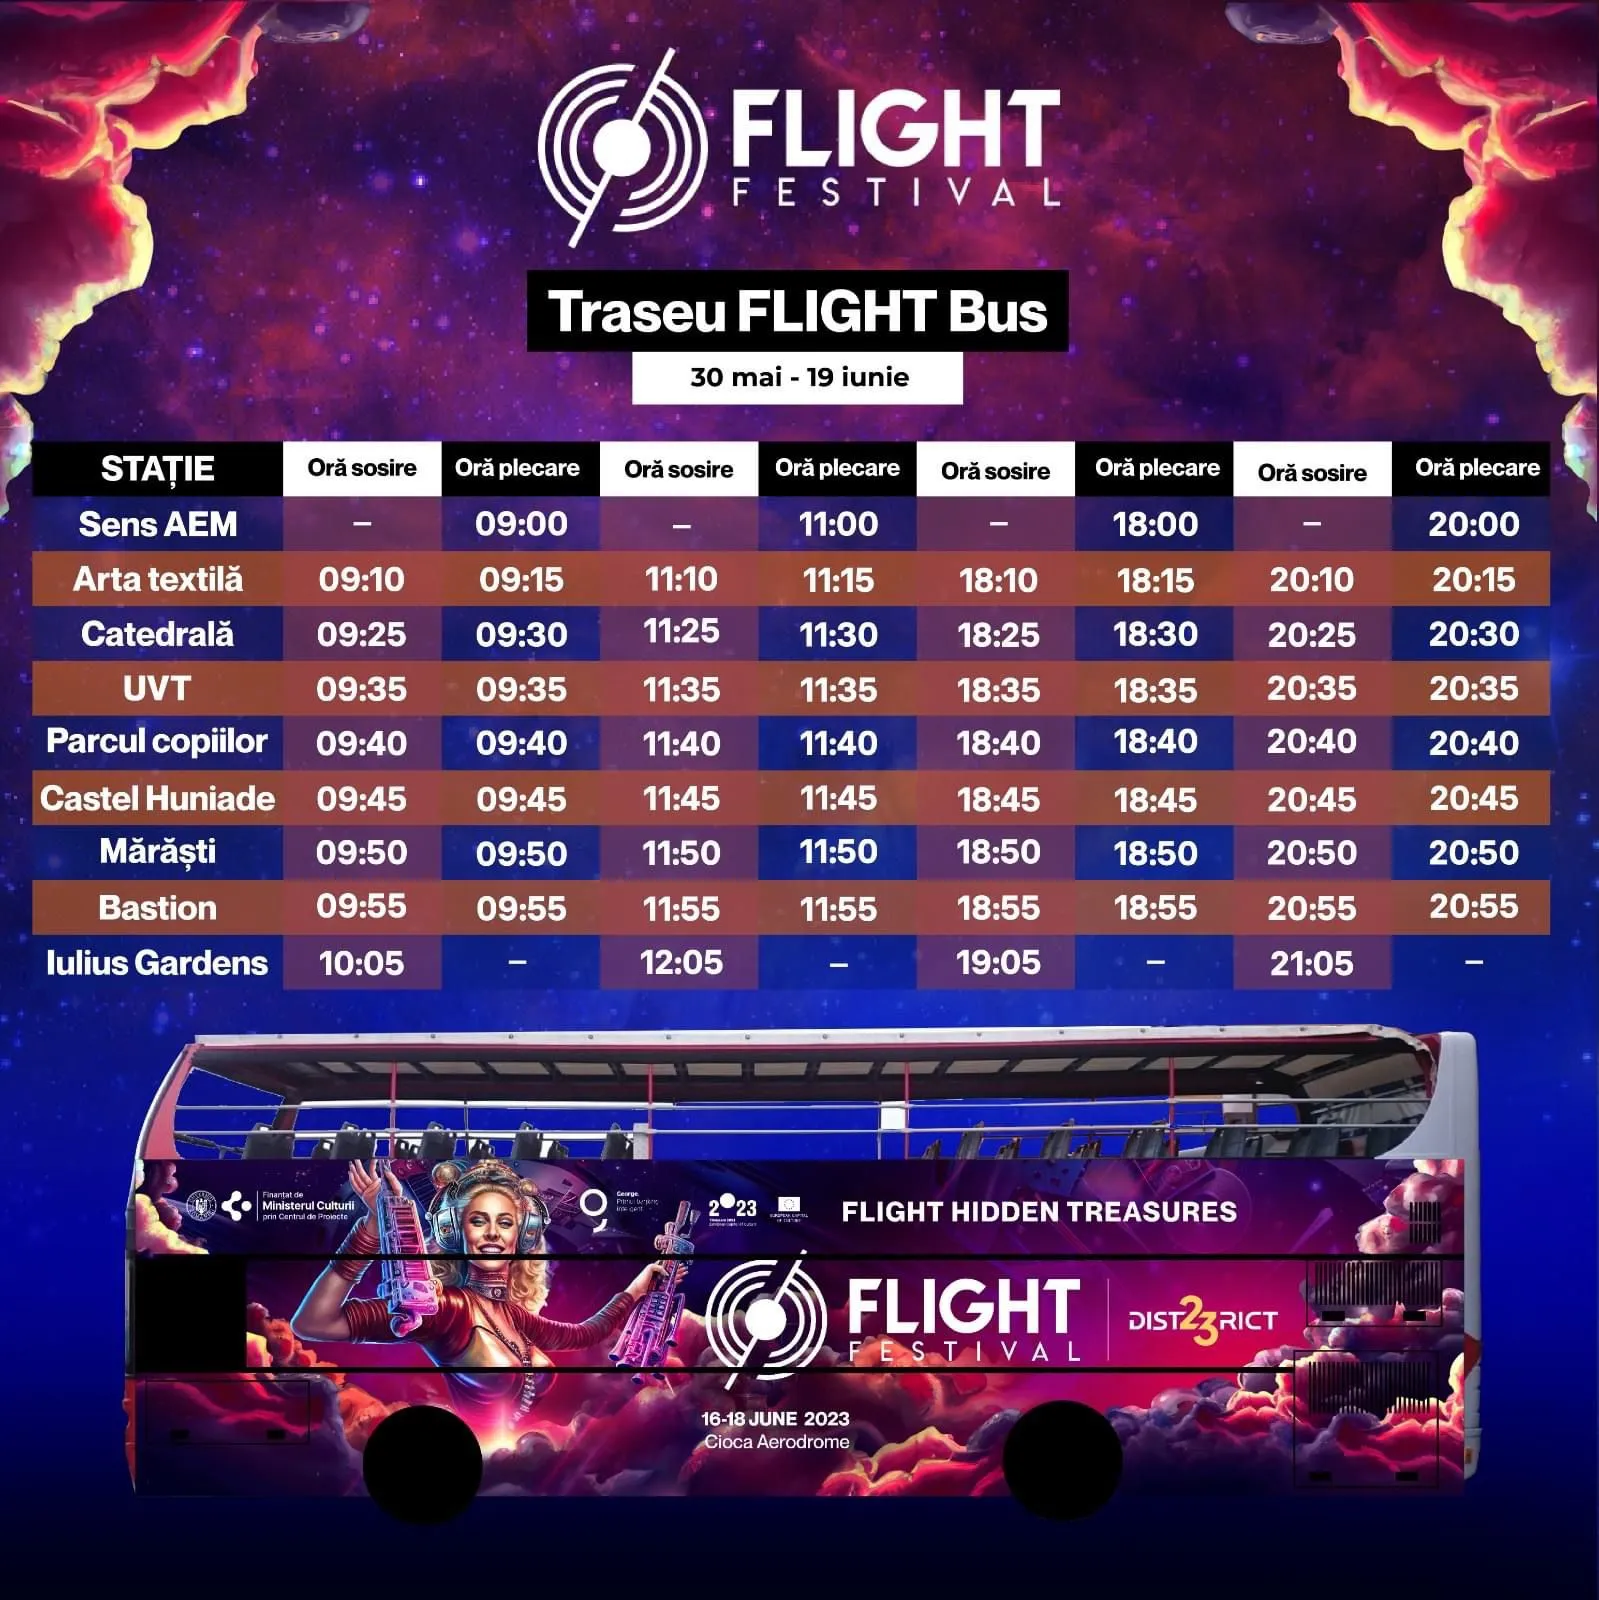 Traseu Flight Bus